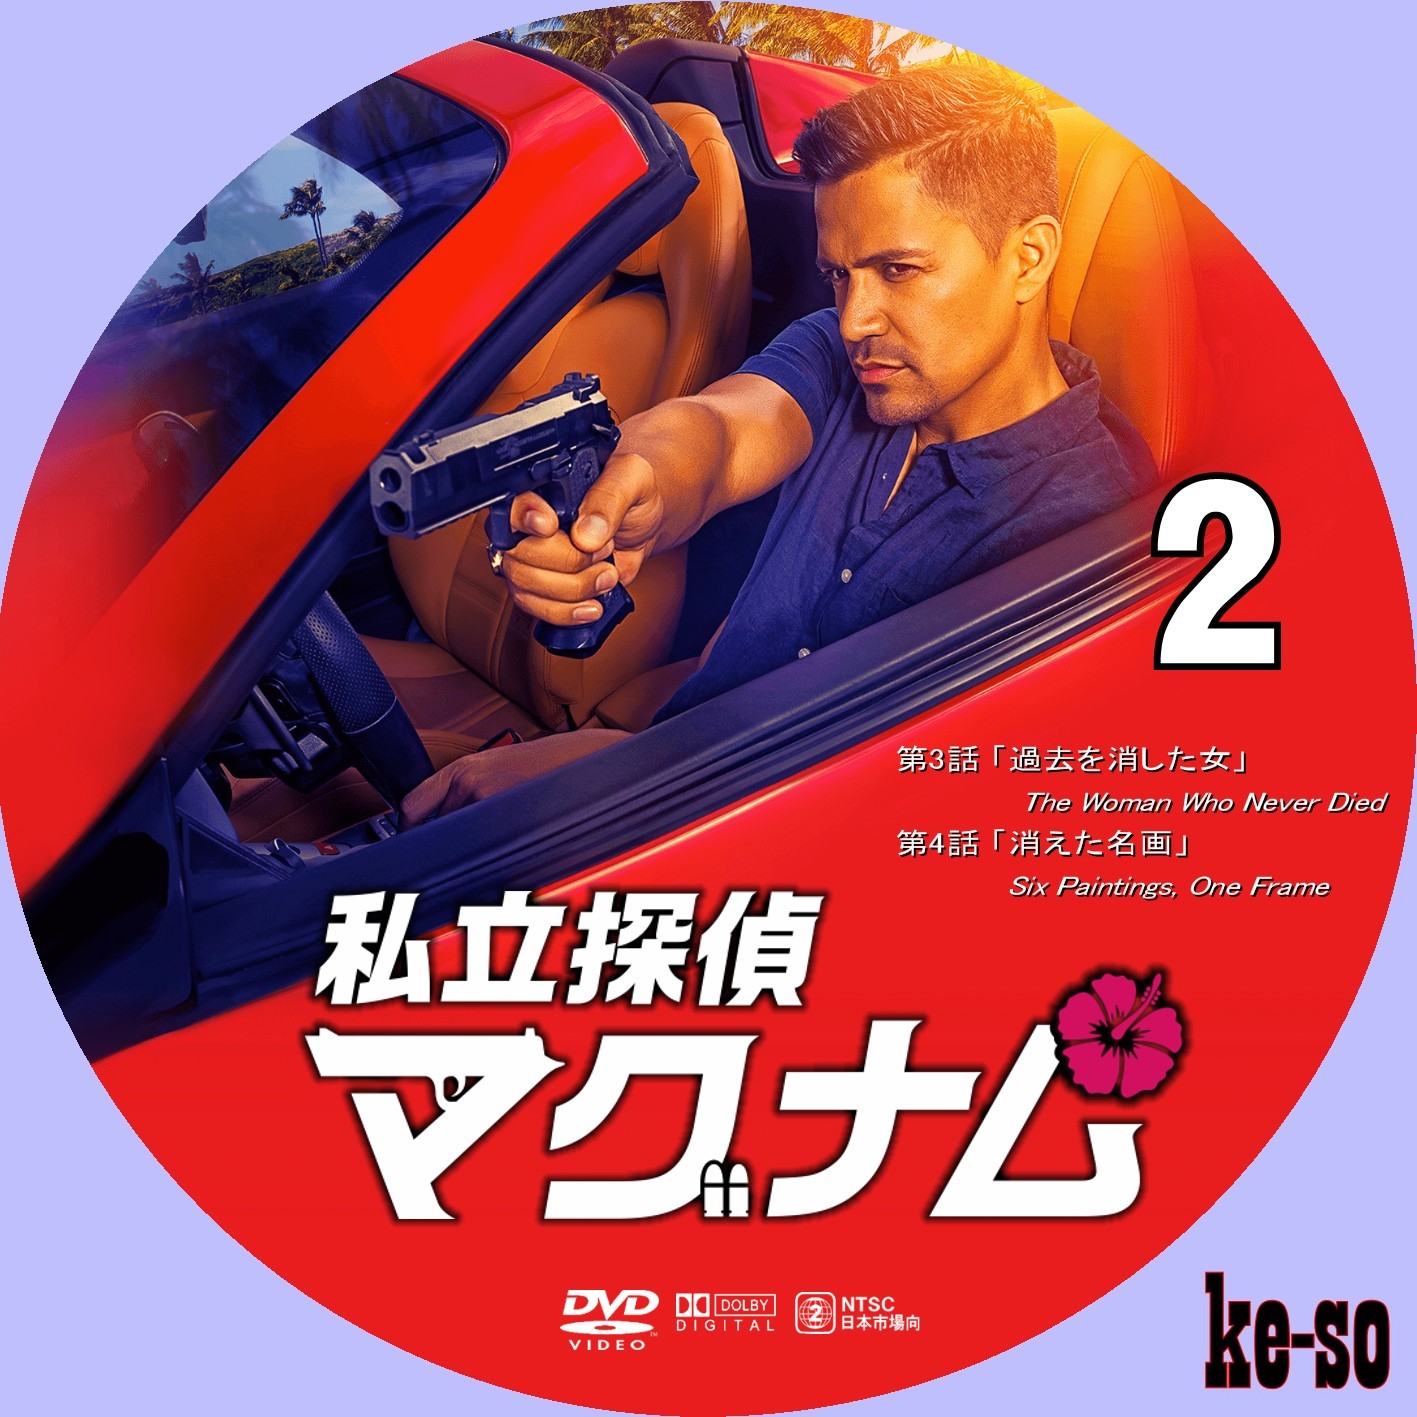 日本販売店 DVD「私立探偵マグナム シーズン1 コンプリートDVD-BOX〈6